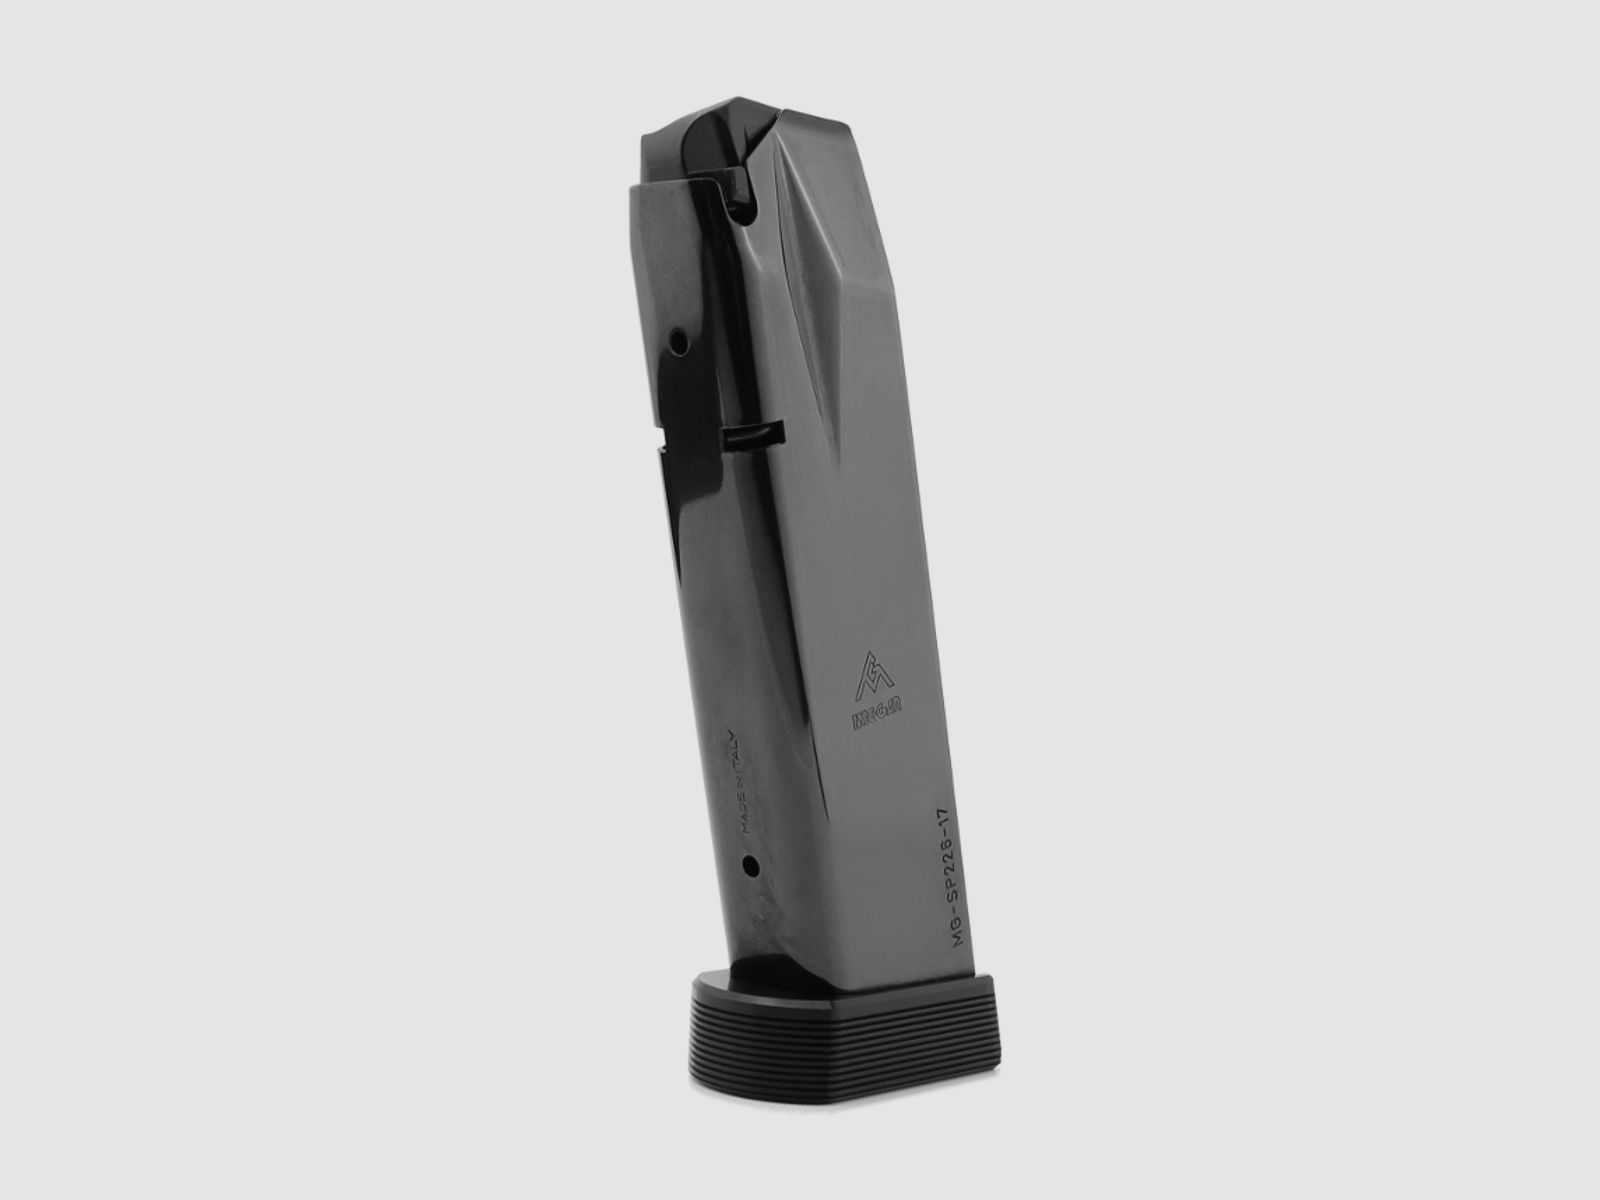 Magazin schwarz 19-Schuss 9mm für Sig Sauer P226 (X-Five, X-Six, X-Short)